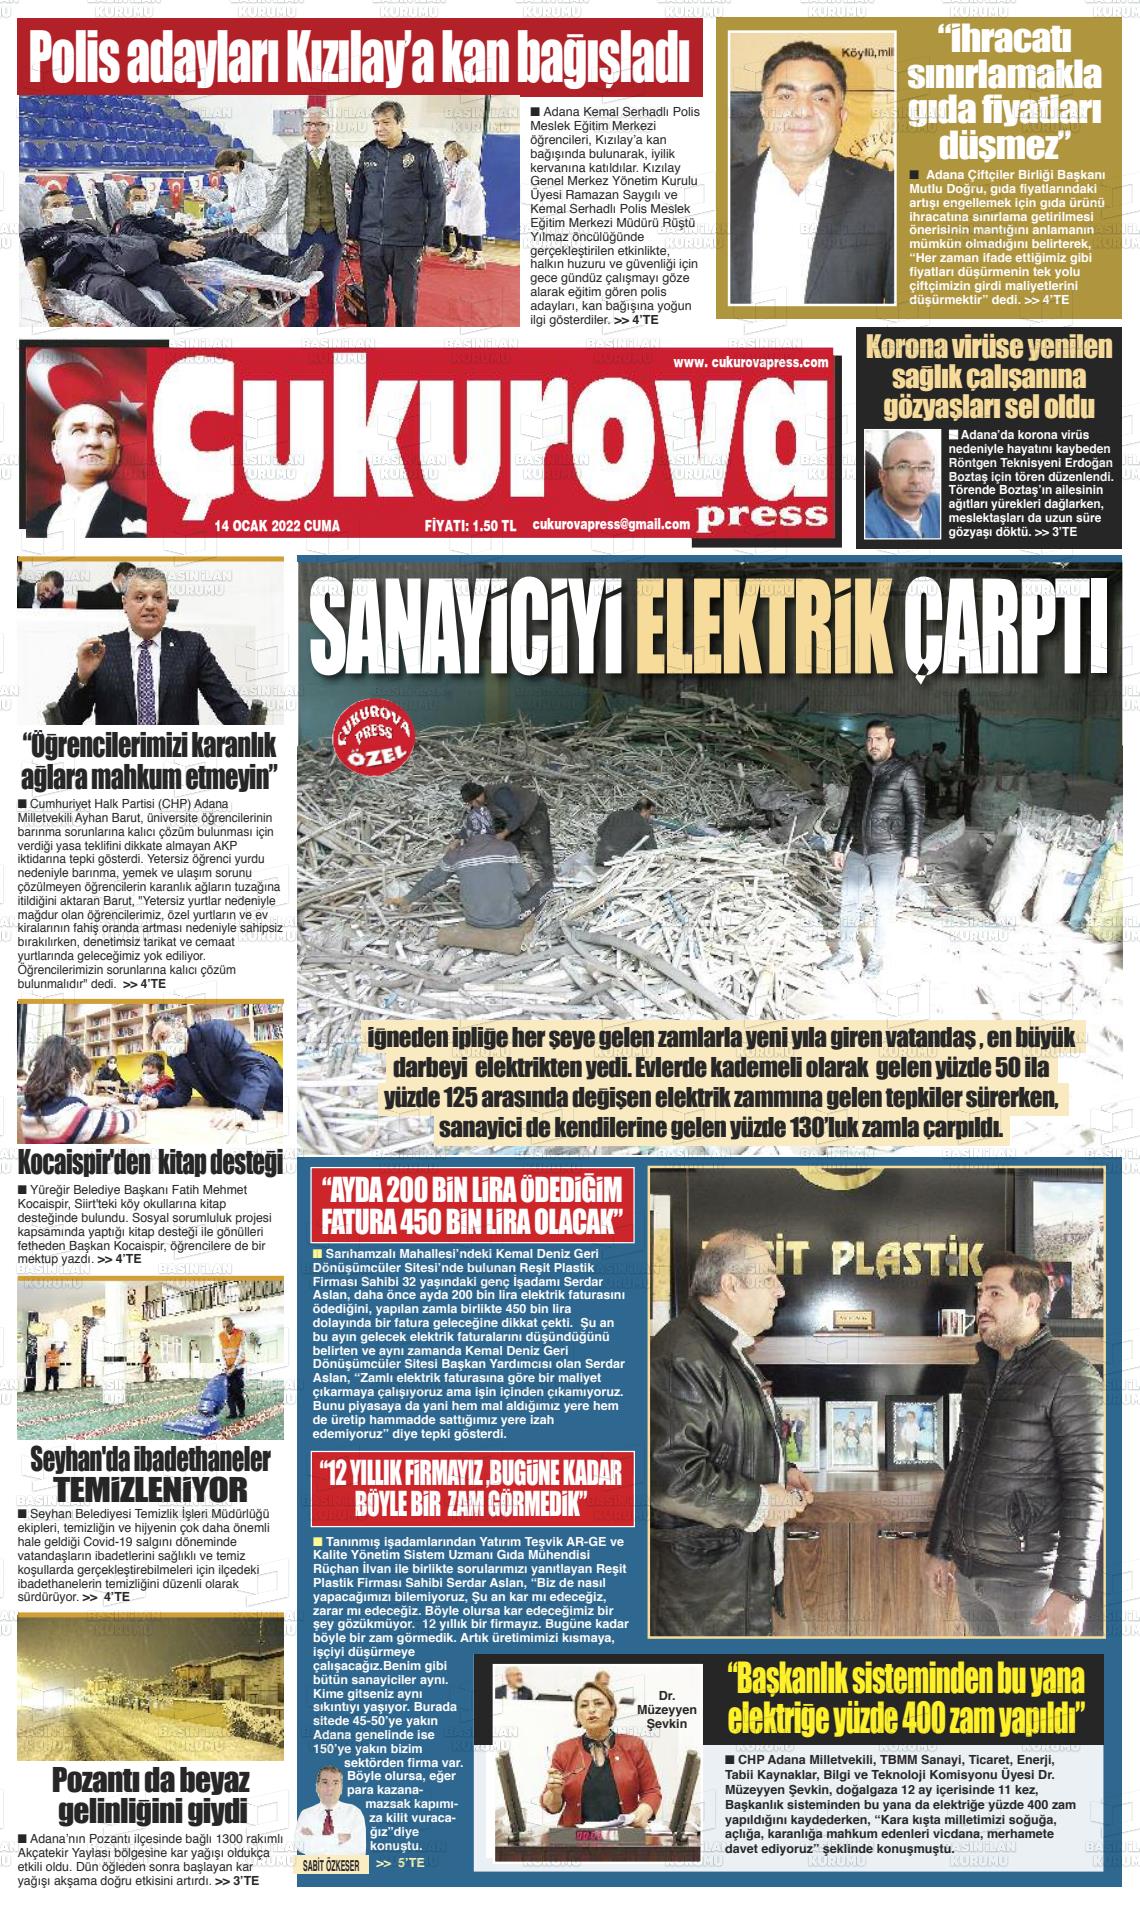 14 Ocak 2022 Çukurova Press Gazete Manşeti